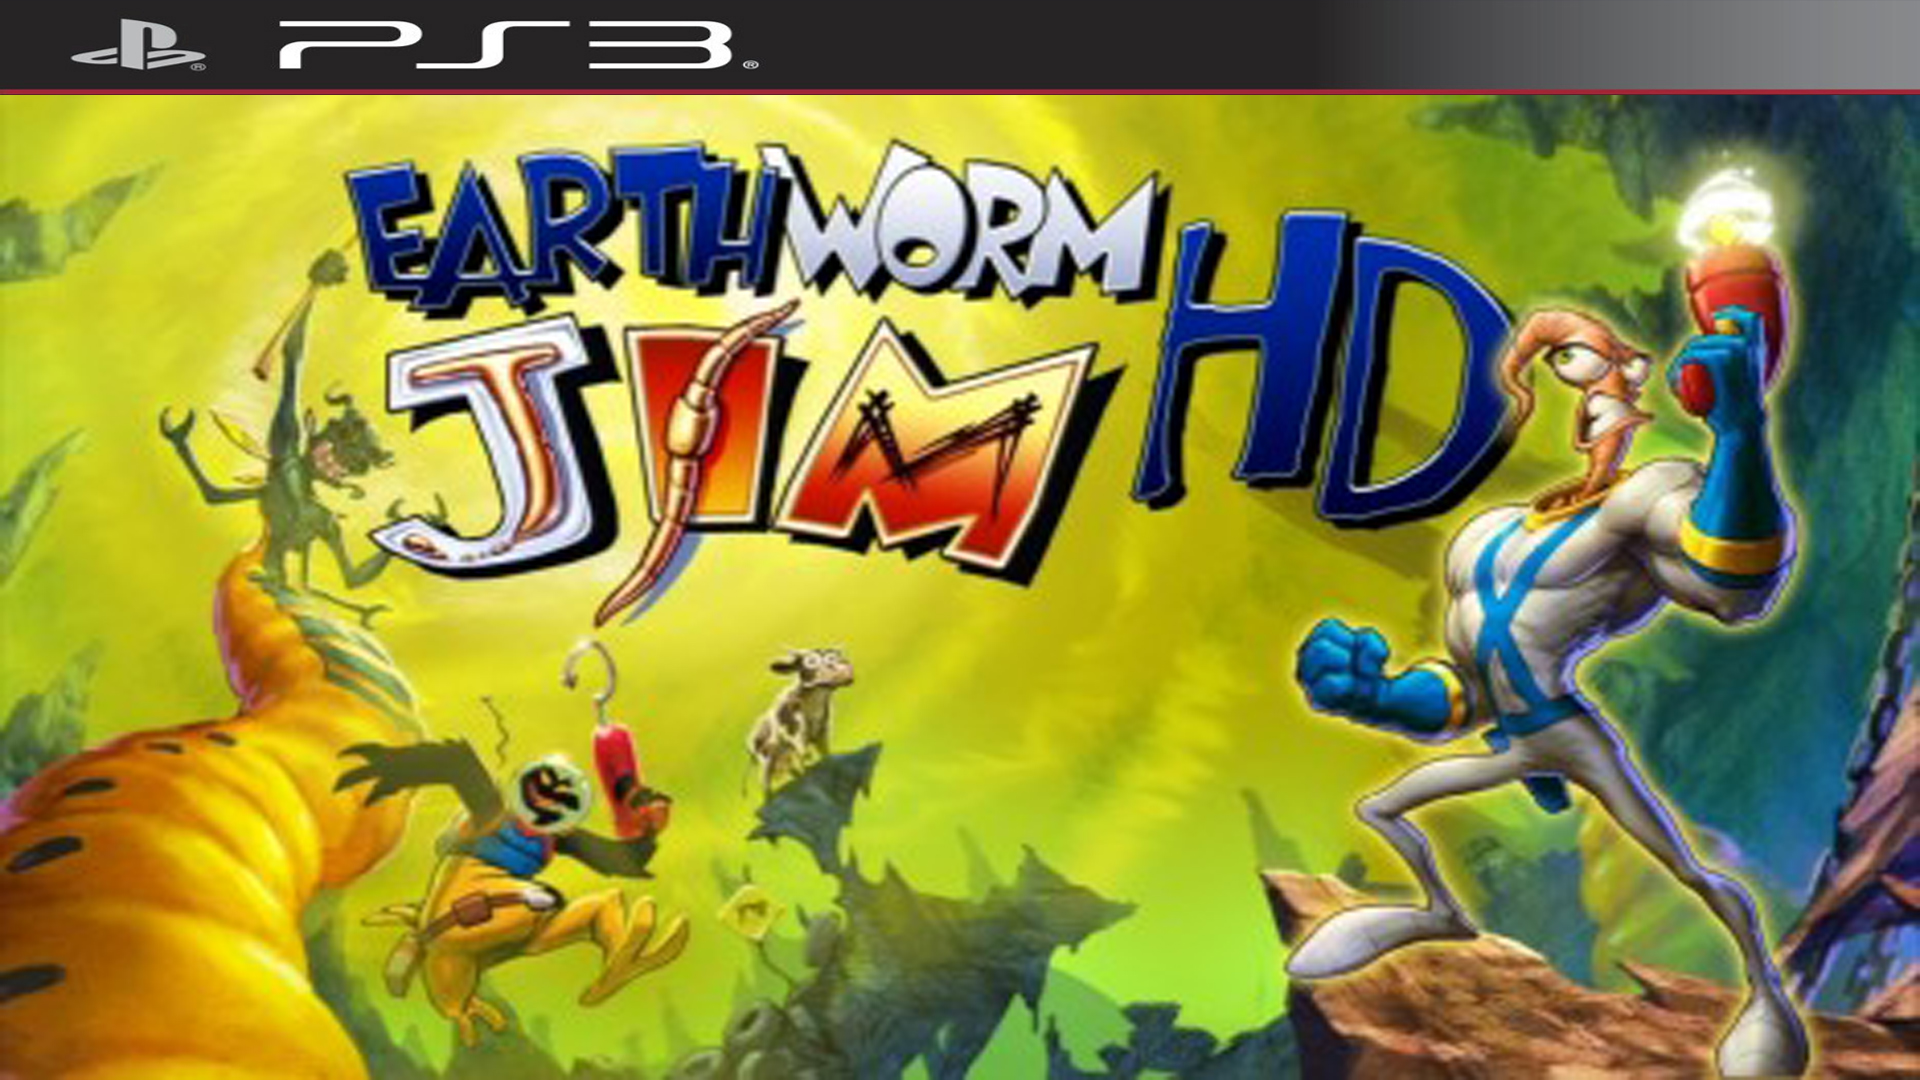 Earthworm jim ps3. Червяк Джим Xbox 360. Червяк Джим игра. Червяк Джим ps3.